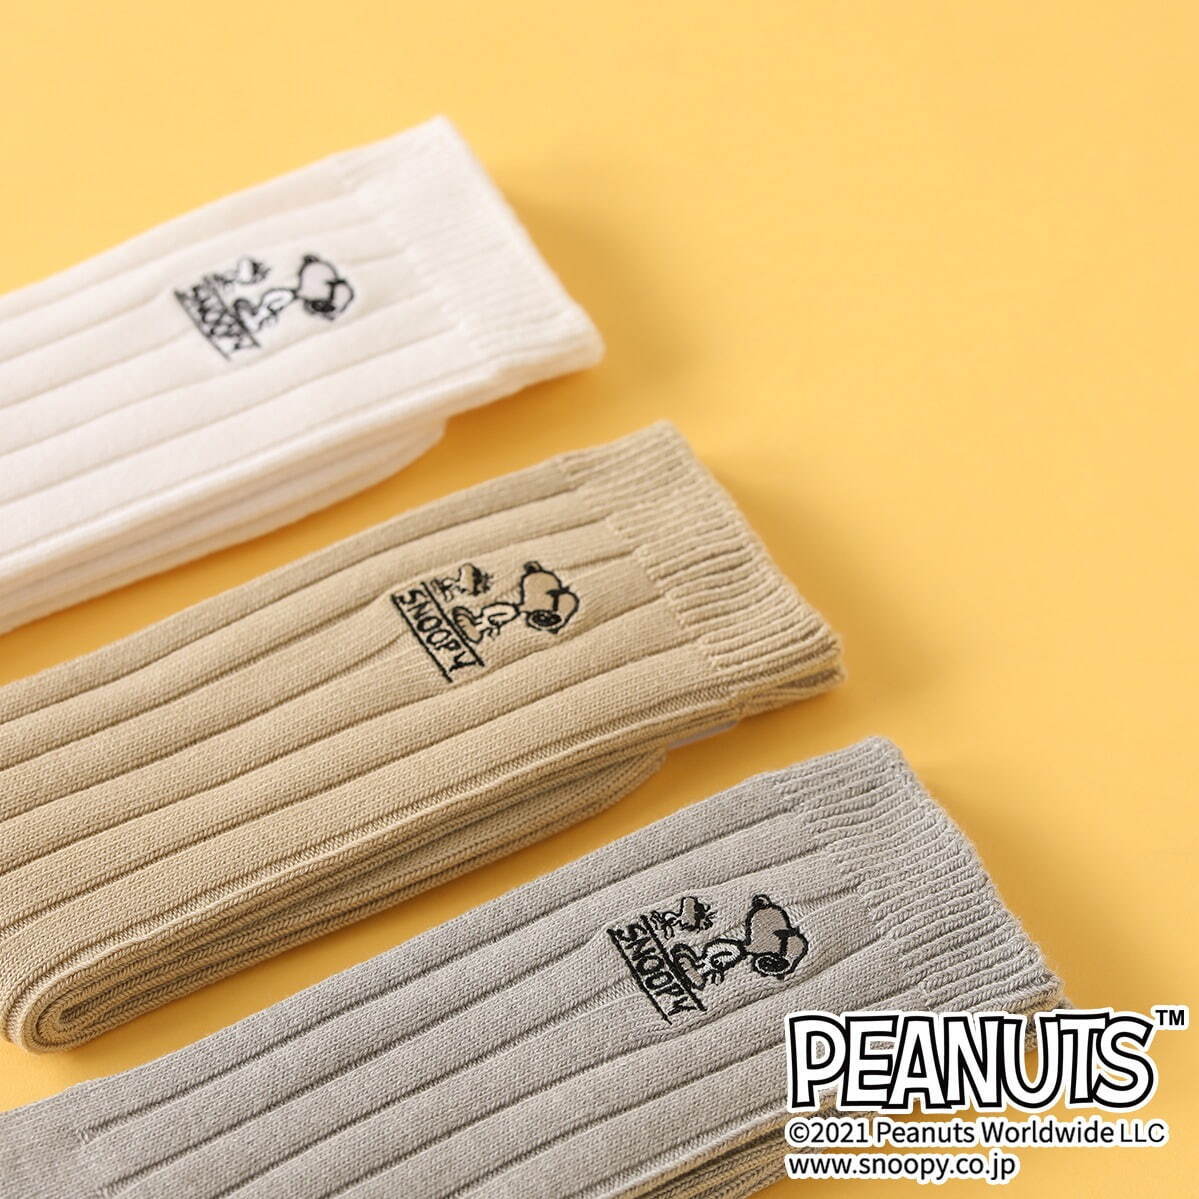 ピーナッツ スヌーピー刺繍ソックス 全3色 各1,760円